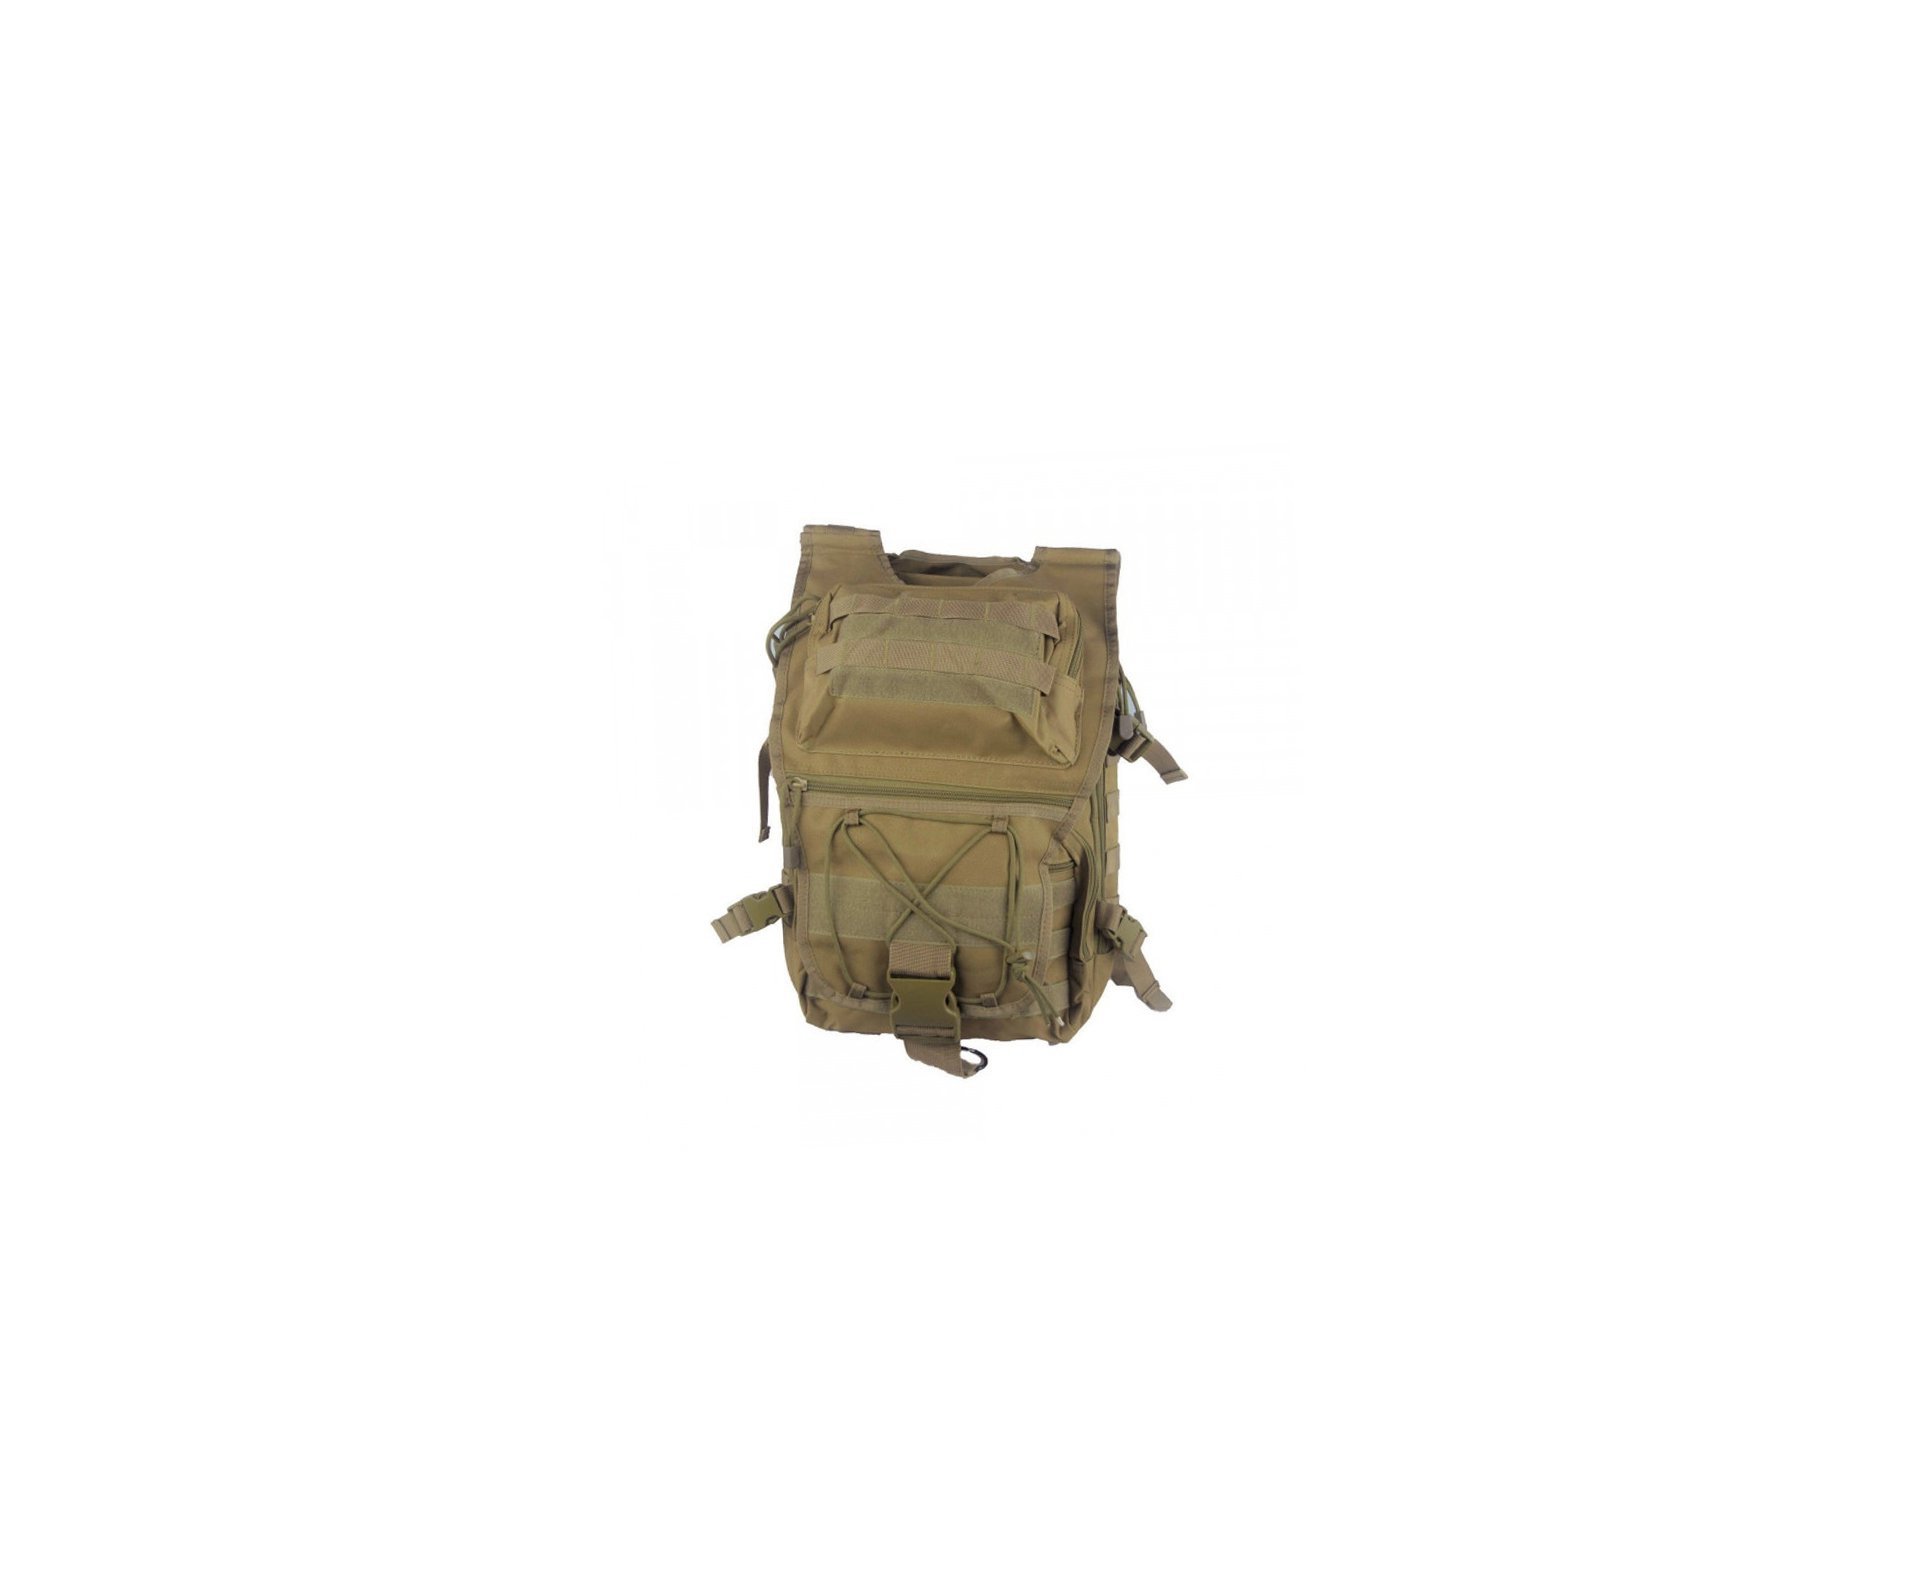 Mochila Tactical Assault Pack Tan Bk-8055tn - Evo Tactical